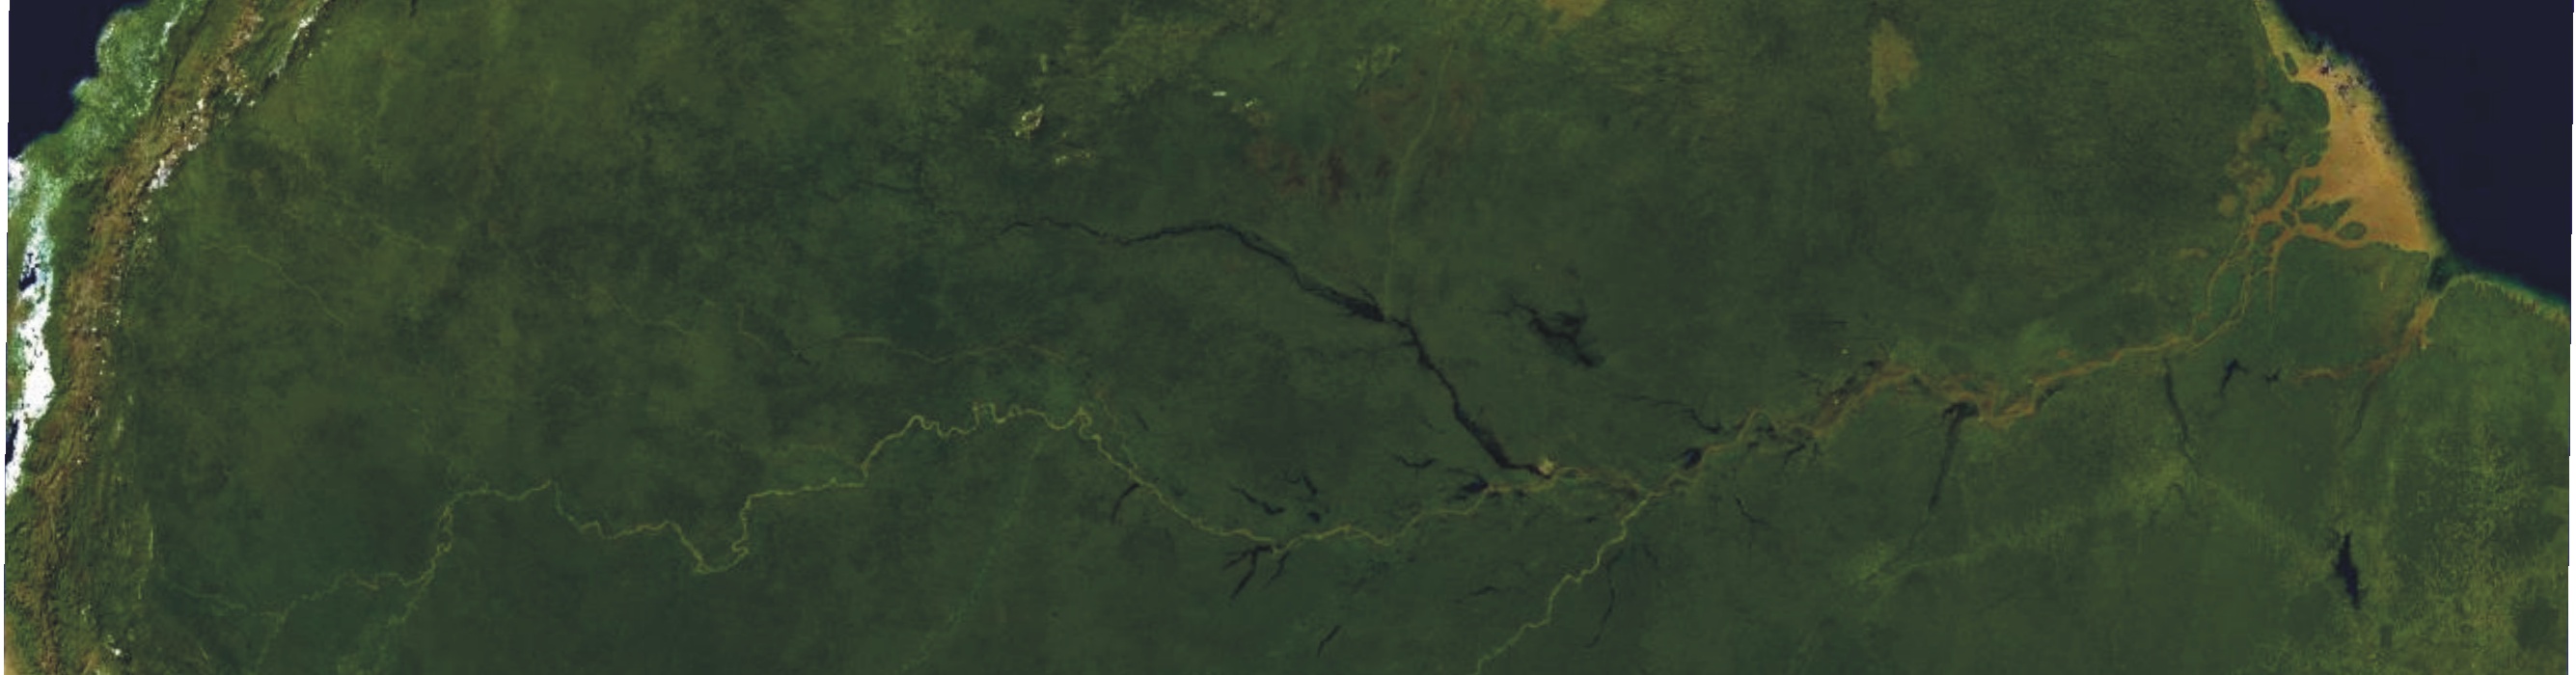 Überblick über den Hauptstrom des Amazonas, vom Satelliten aus gesehen